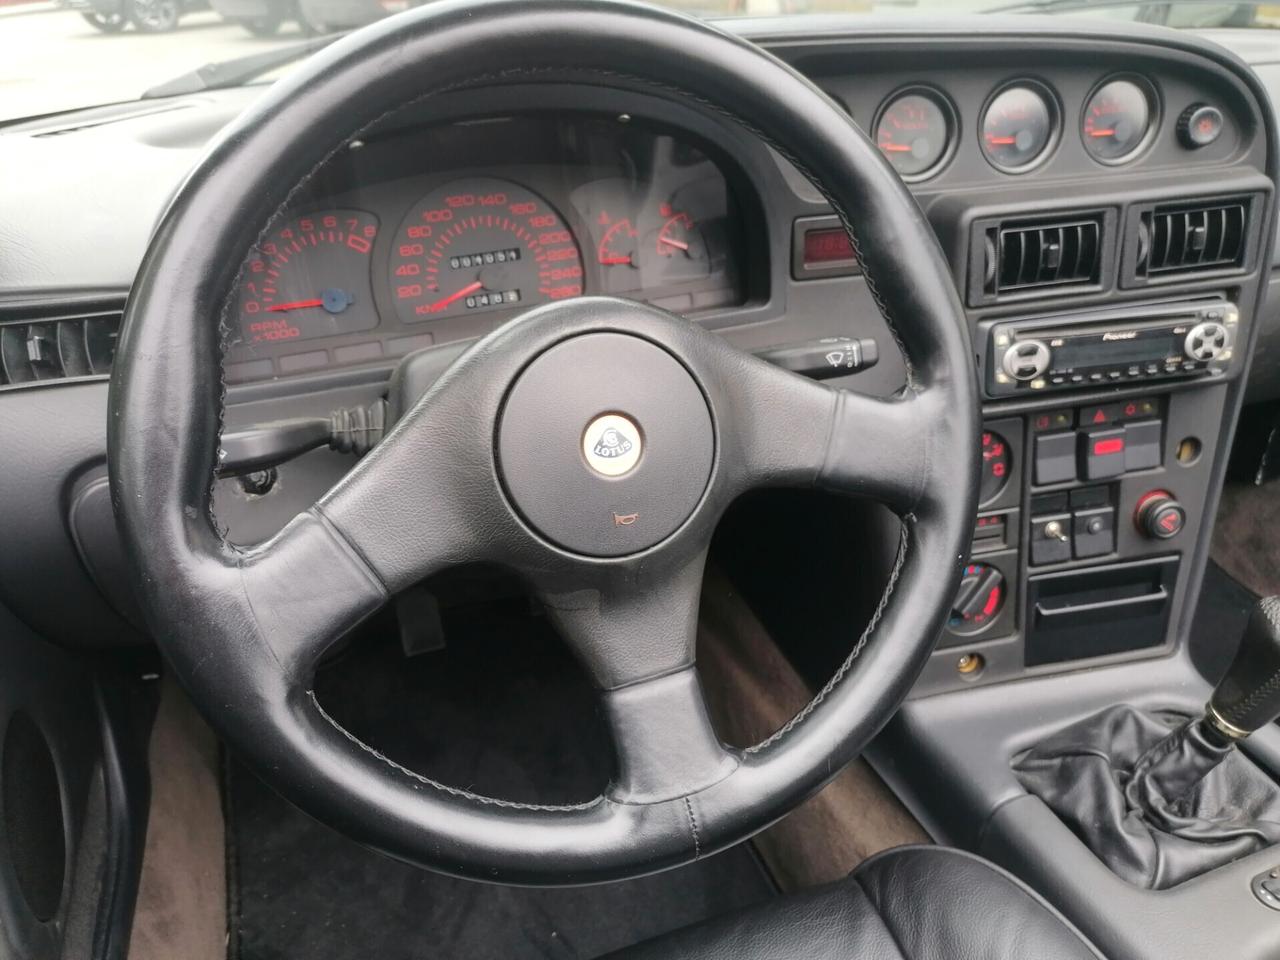 Lotus Elan 1.6i turbo 16V SE Spider - 1991